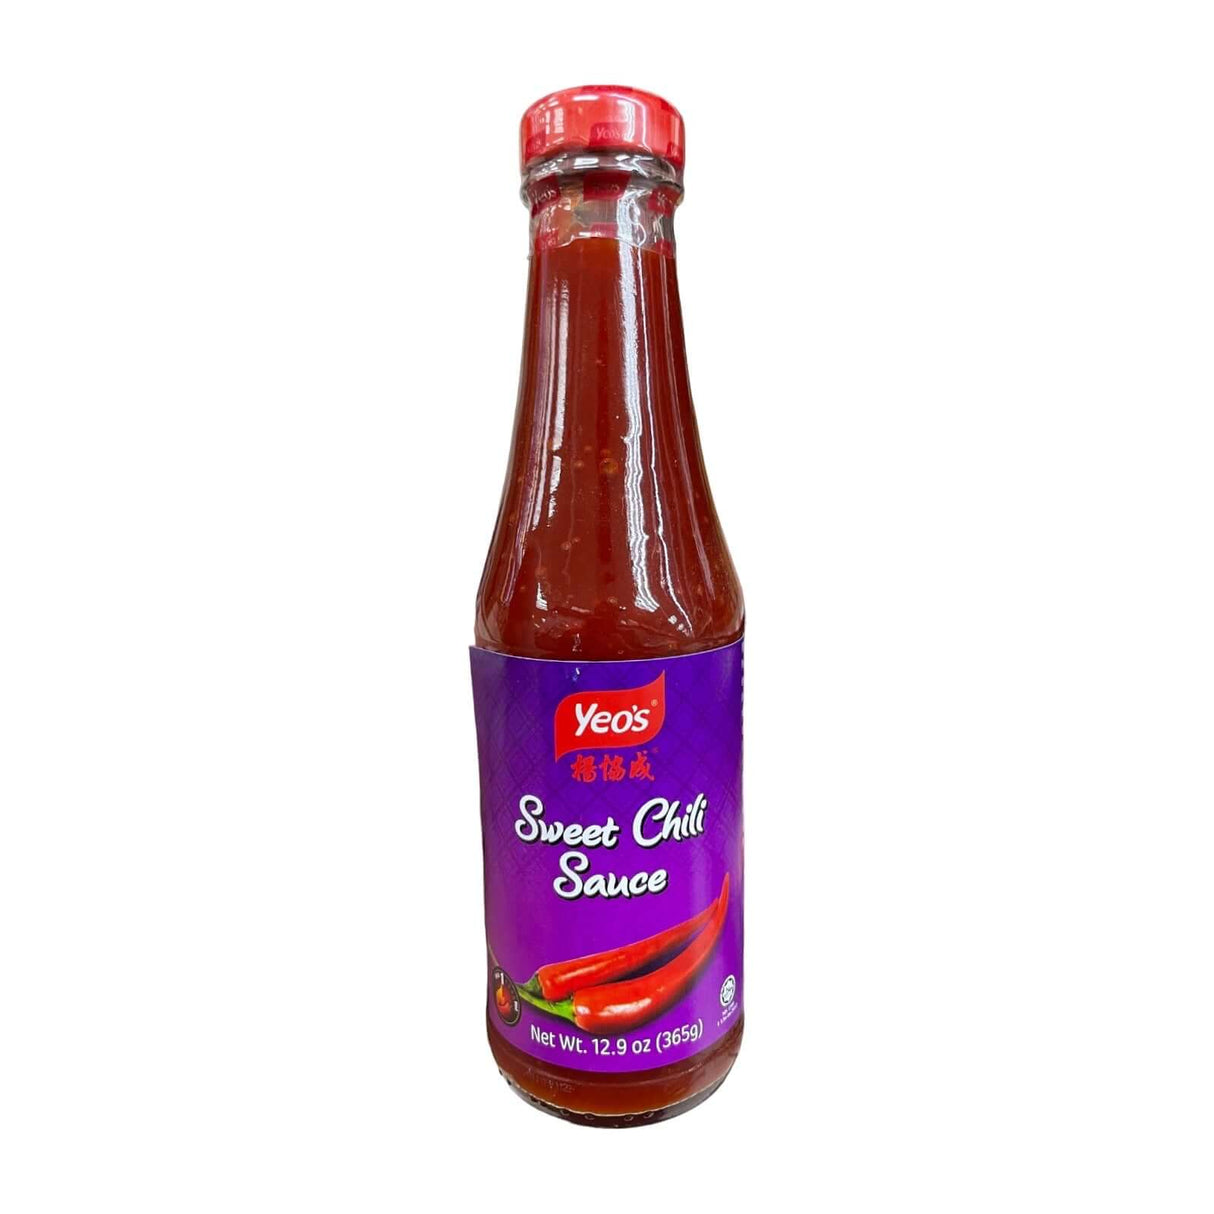 Yeo's Sweet Chili Sauce